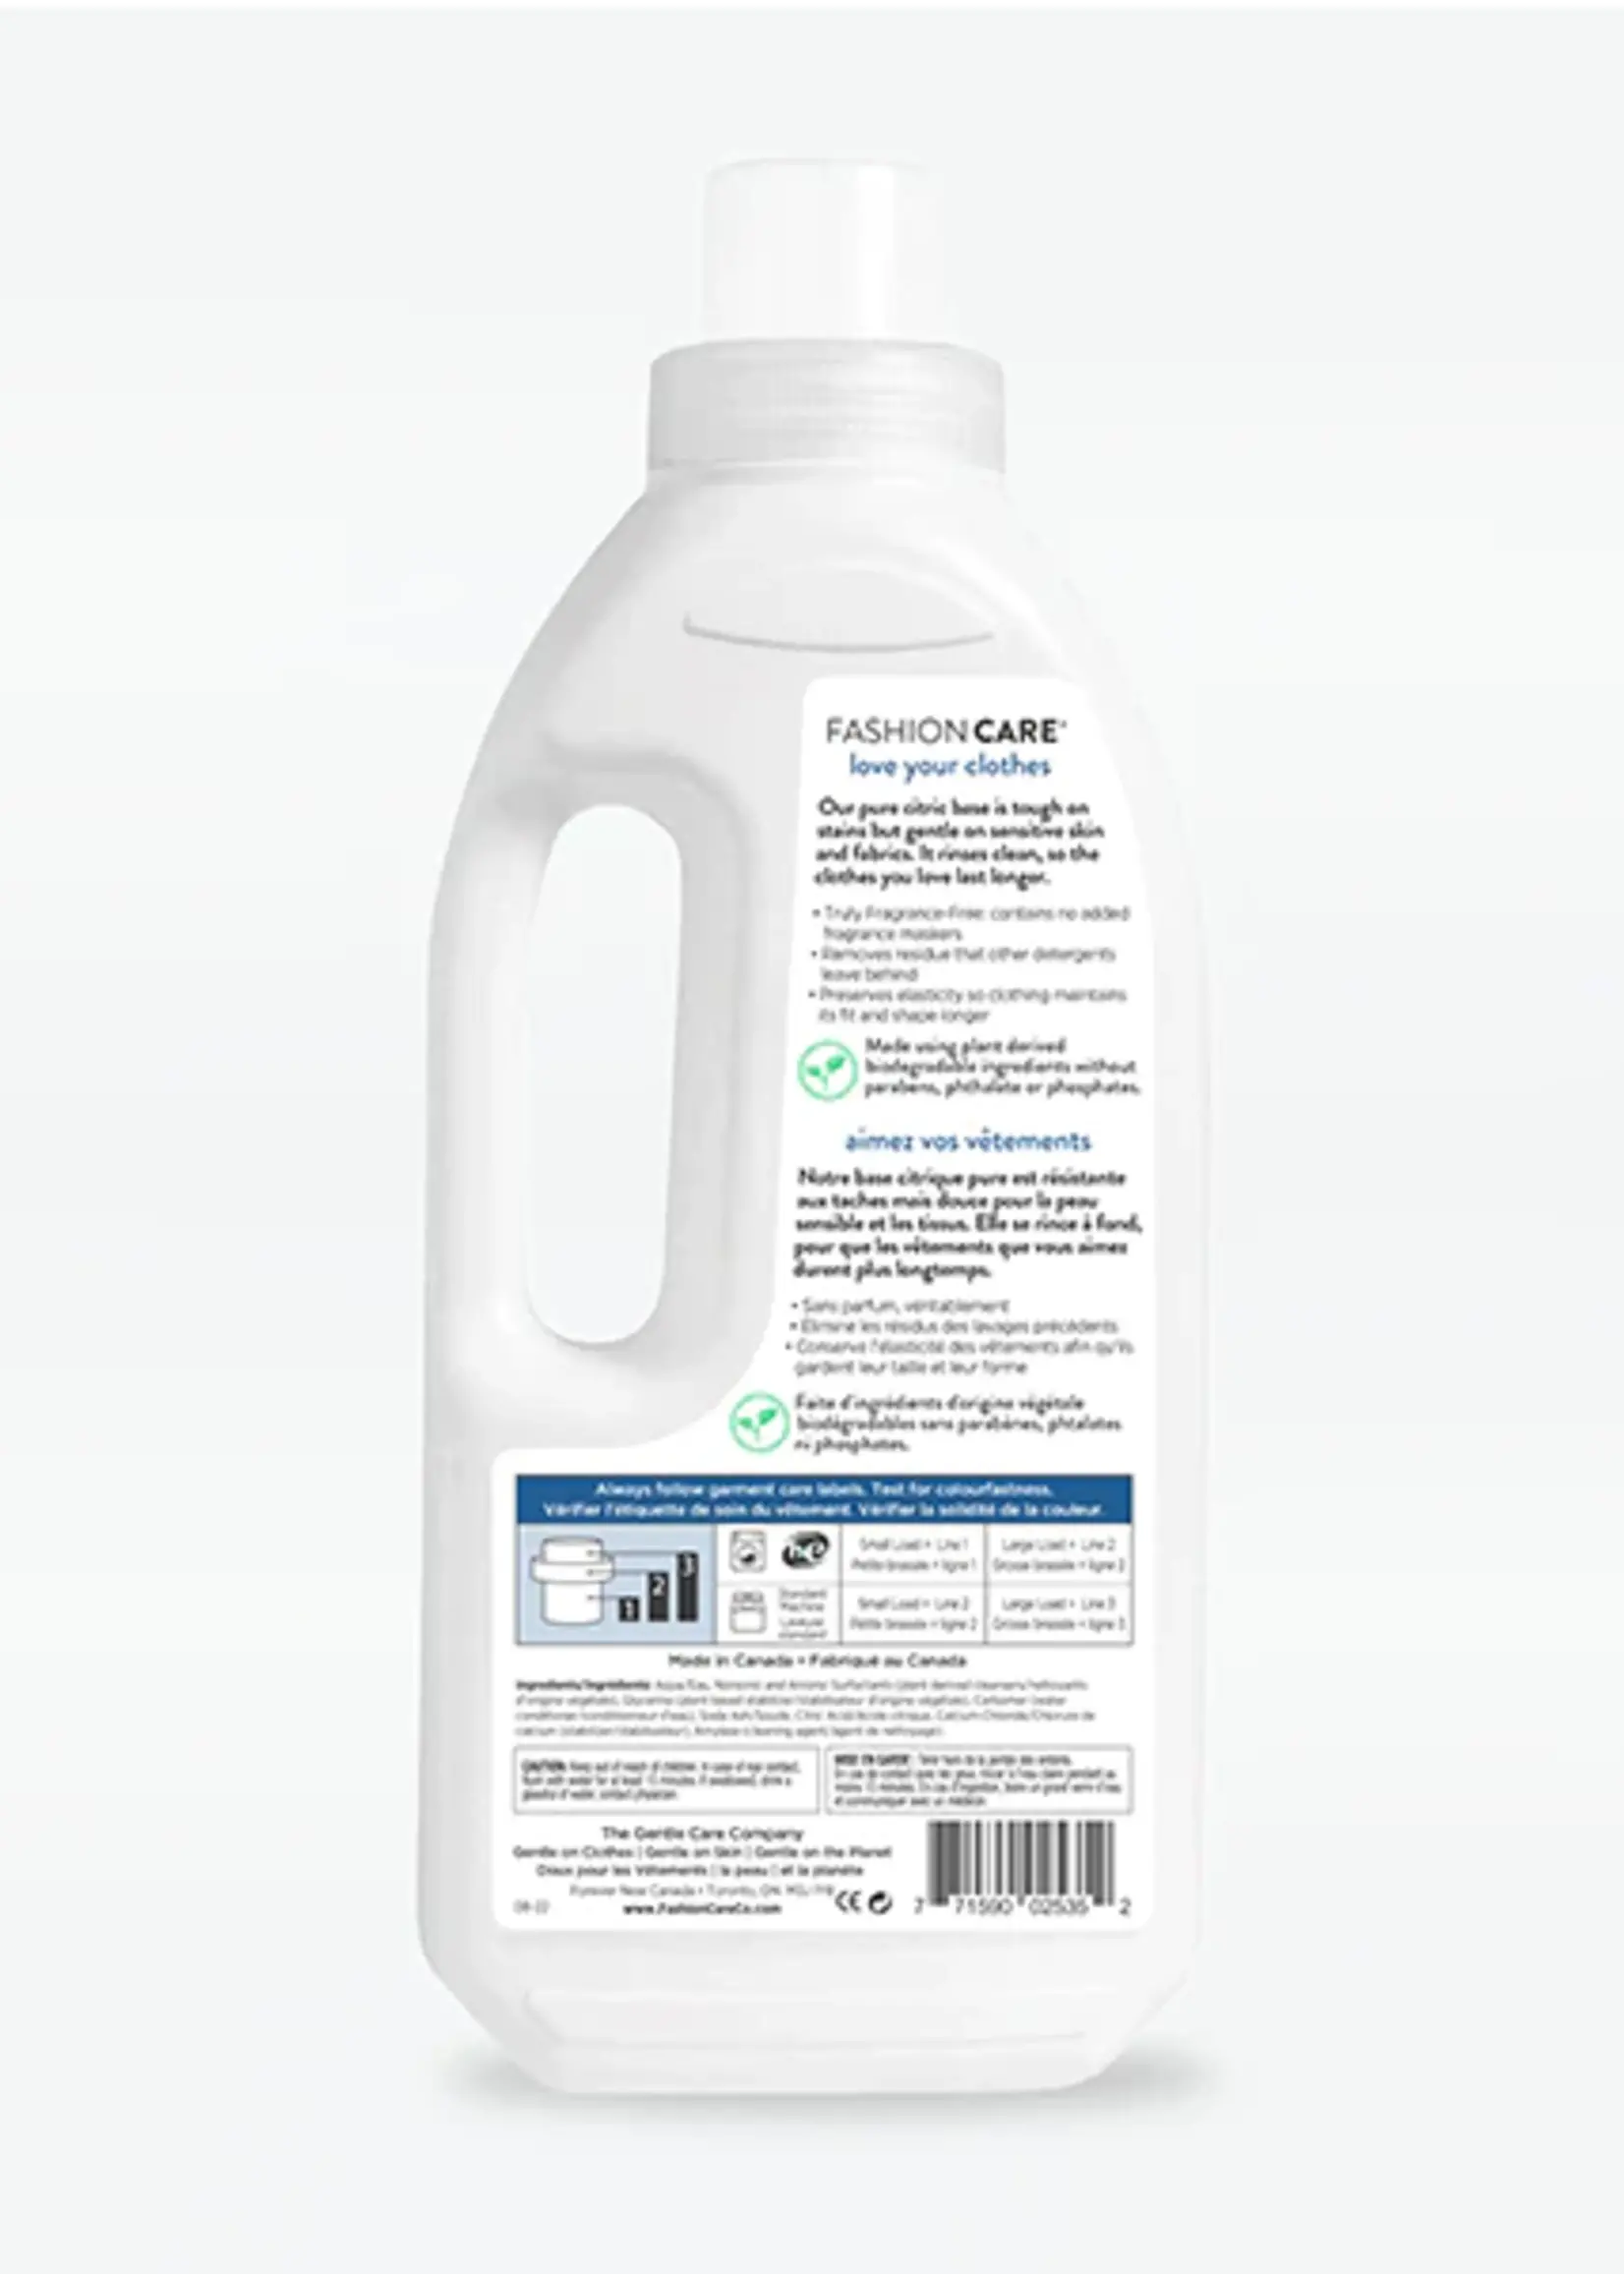 forever new® 30032 Original Scent Liquid Detergent - 32oz. - Allure  Intimate Apparel